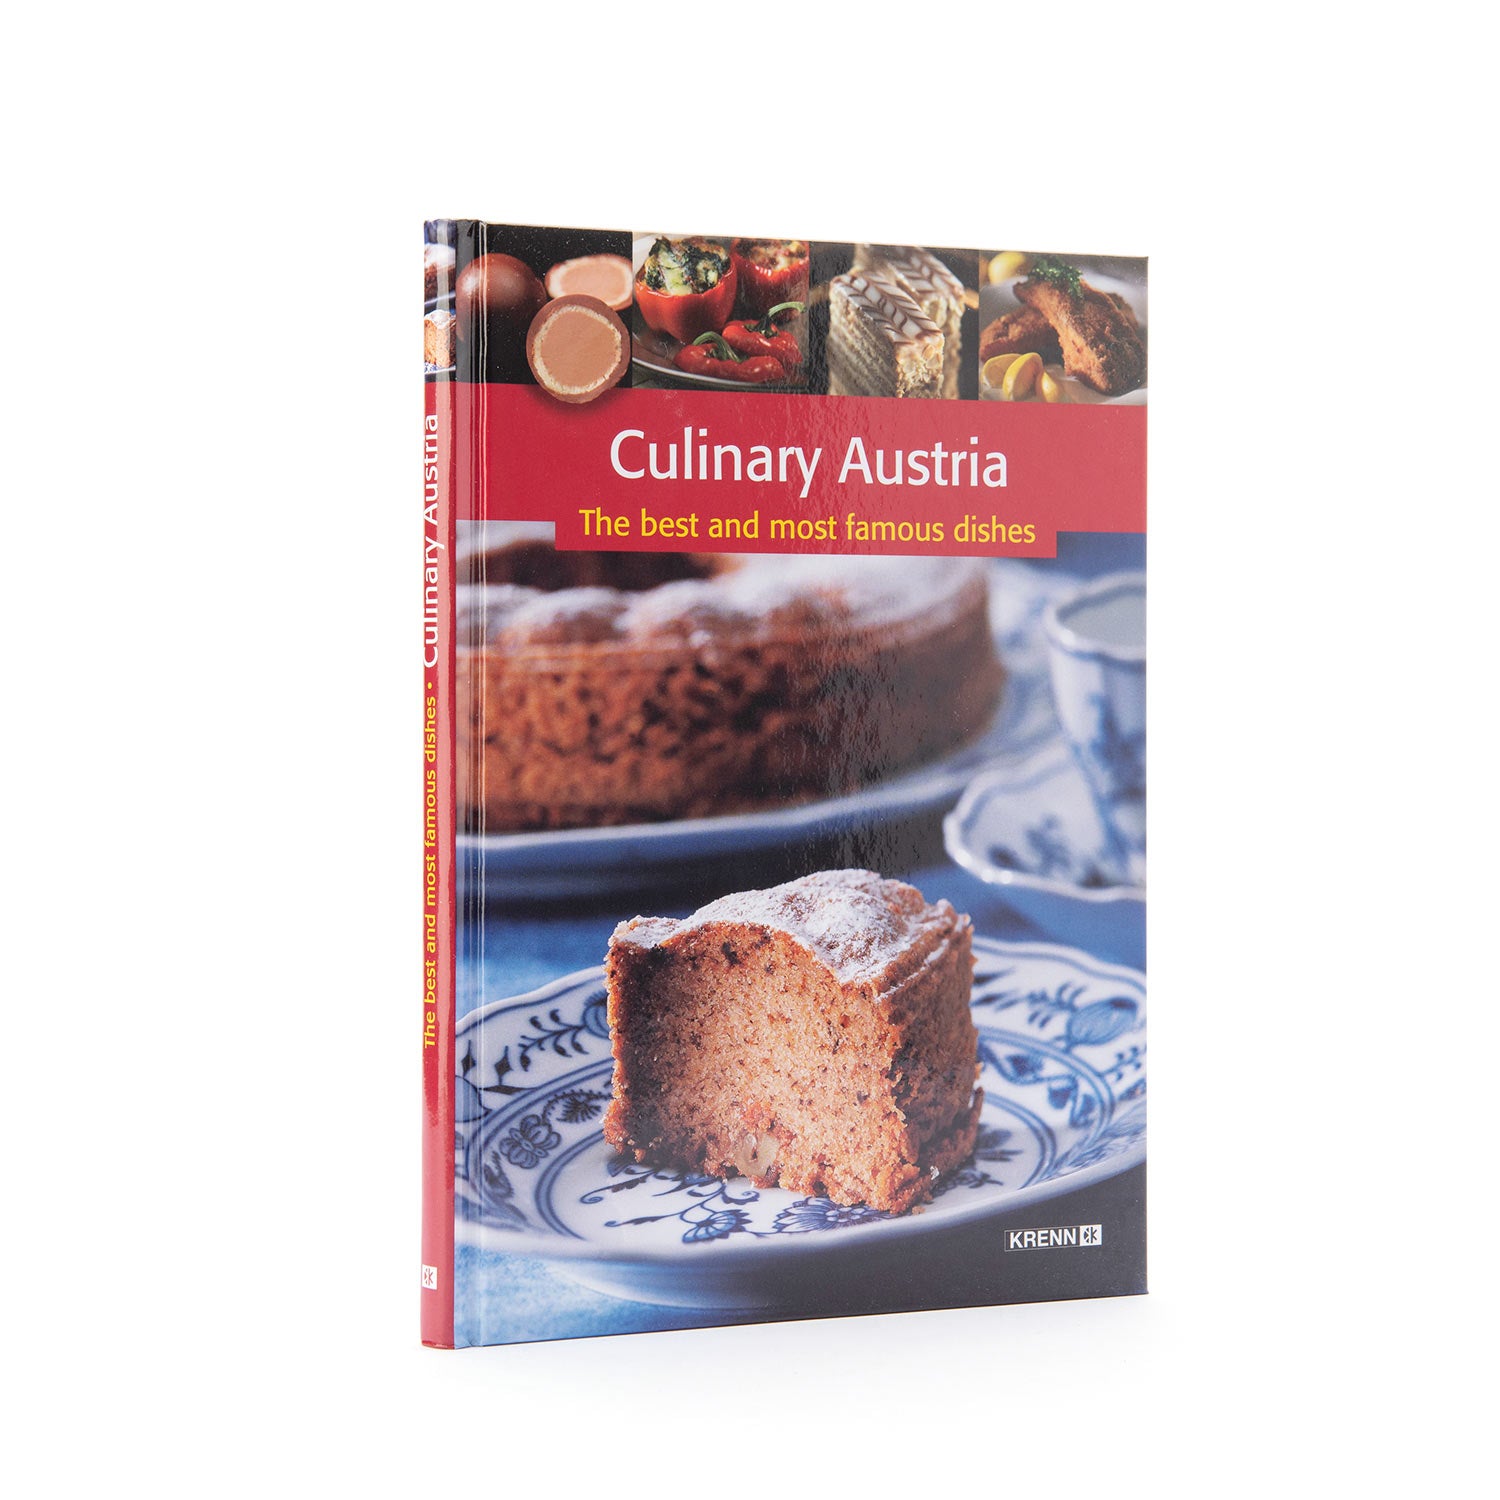 book, austria, austrian, cake, cookbook, cook, bake, krenn, osterreichische, kuche, die, besten, gerichte, famous, dishes, 